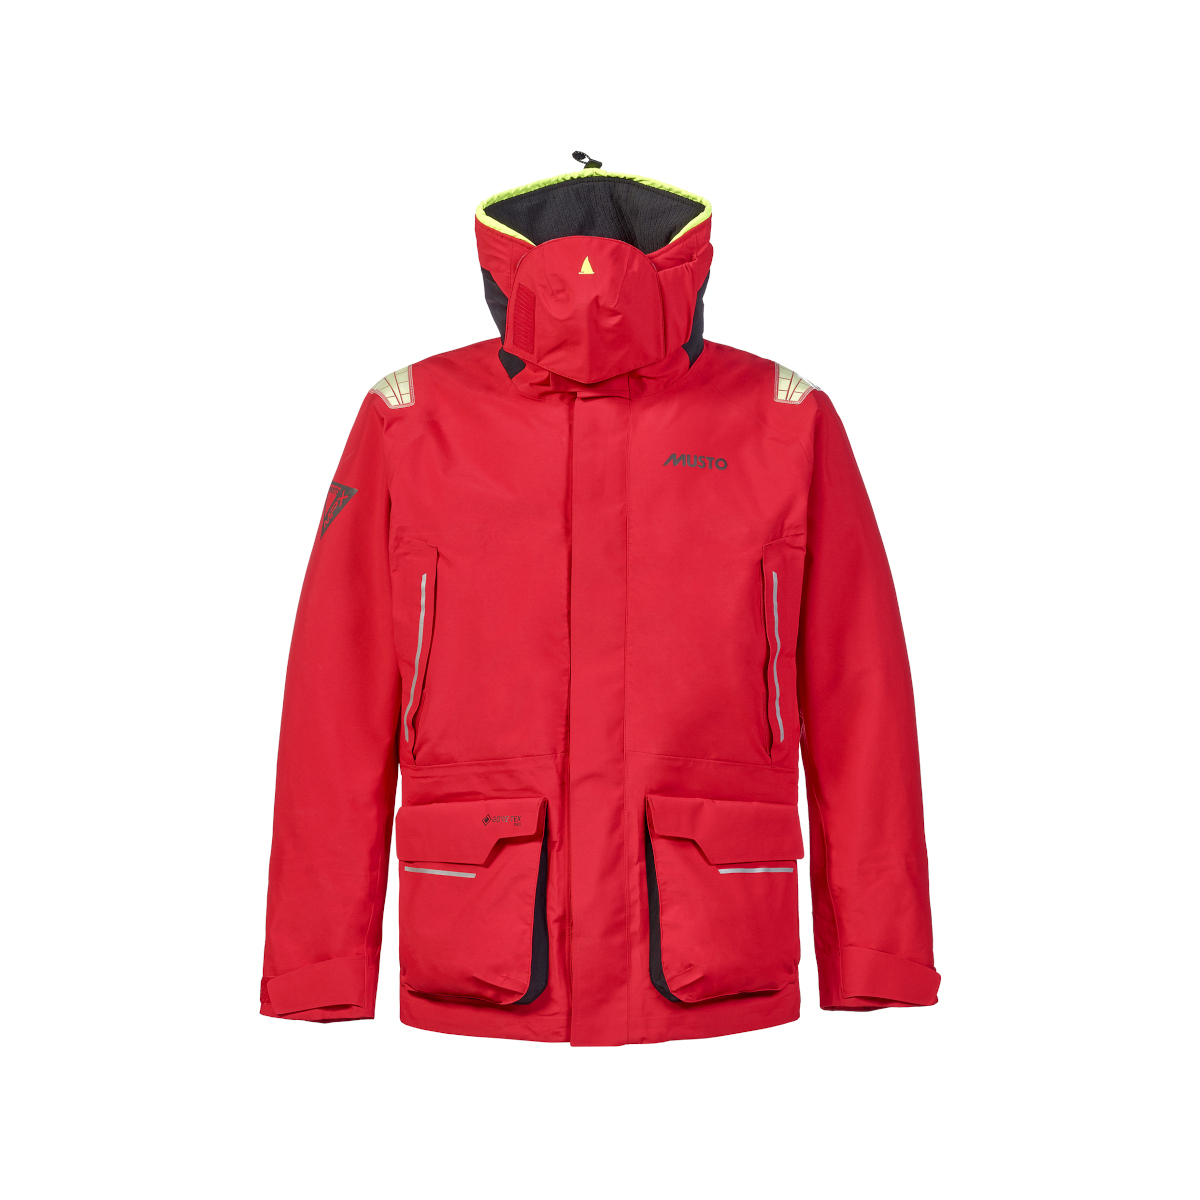 Musto MPX Gore-Tex Pro Offshore 2.0 veste de voile homme rouge, taille M